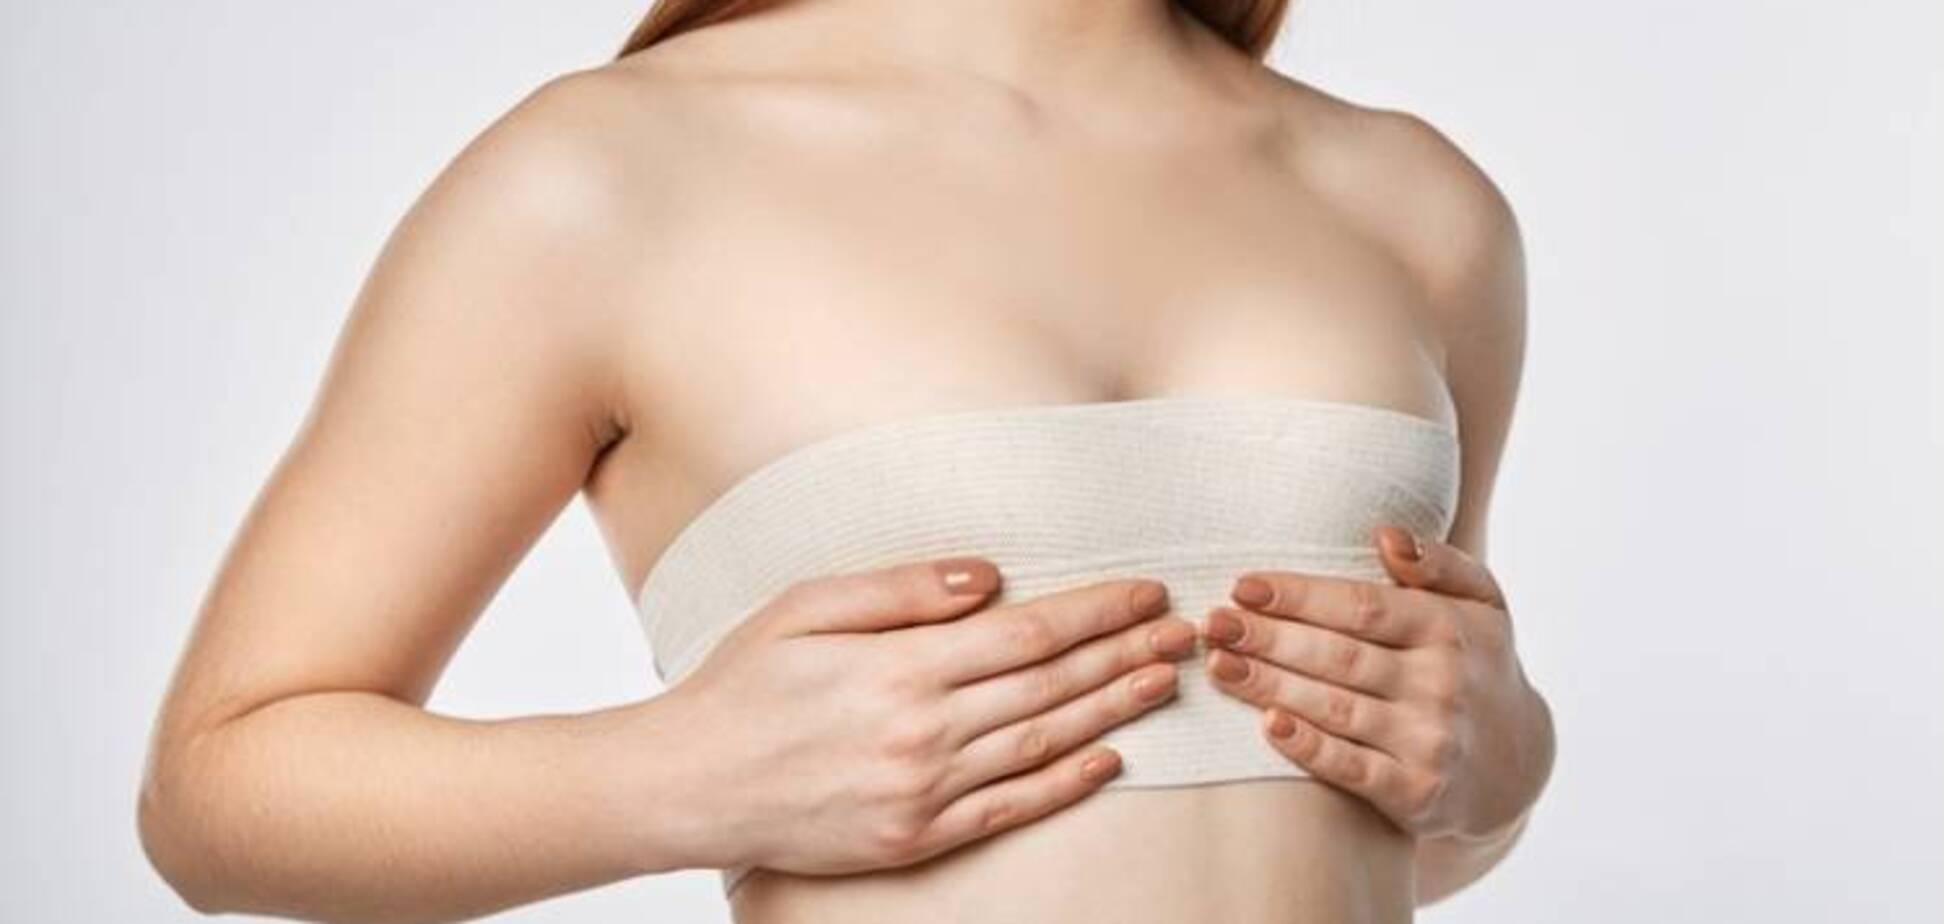 Коррекции формы и размера груди: как проходит операция